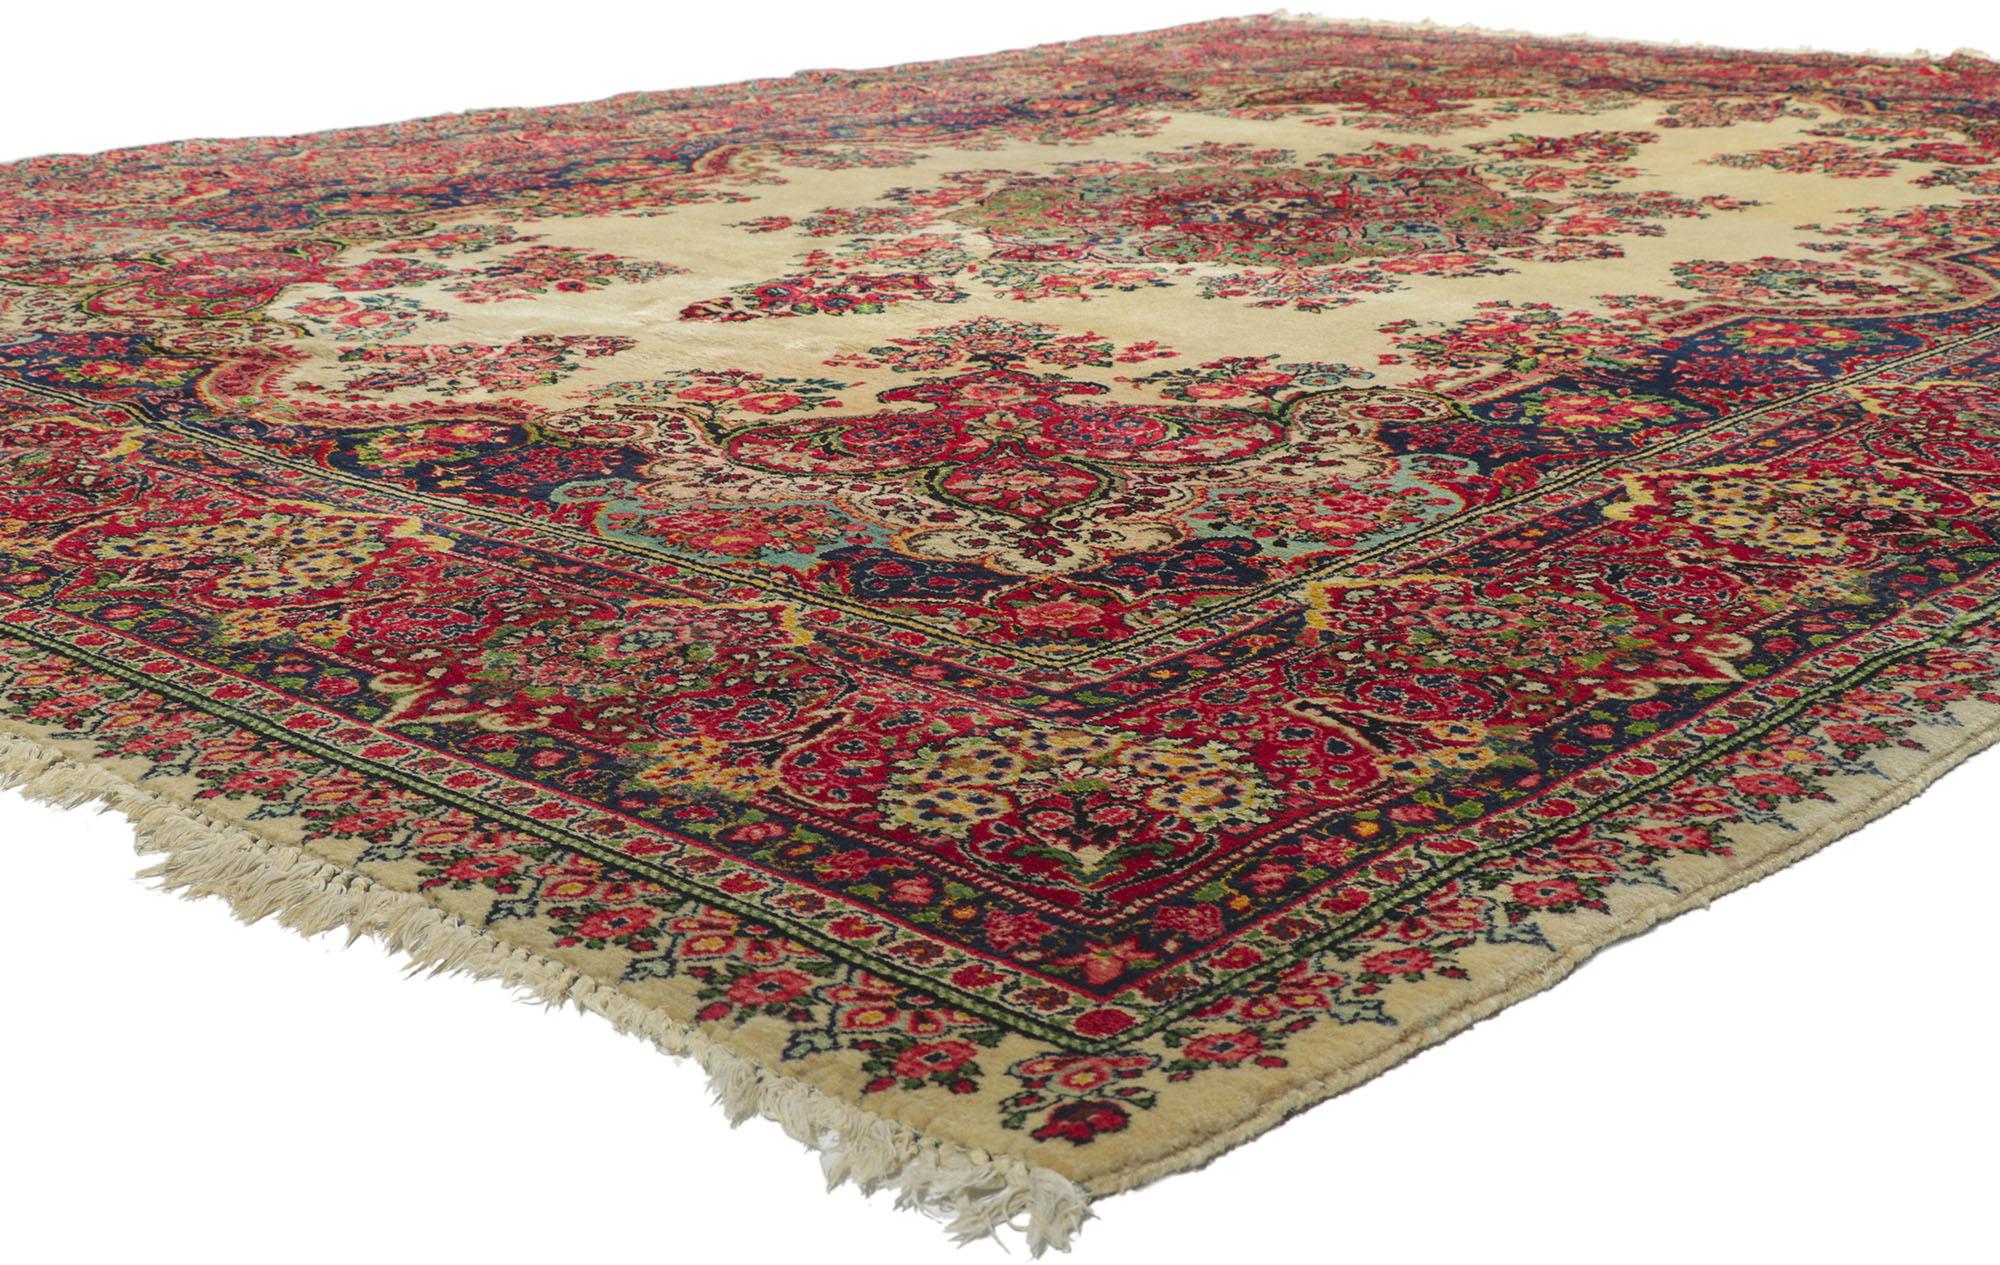 78229 Tapis sarouk persan vintage, 10'03 x 13'09. Riche en couleurs, avec des détails et une texture incroyables, ce tapis sarouk persan vintage noué à la main est une vision captivante de la beauté tissée. Le motif floral majestueux et la palette